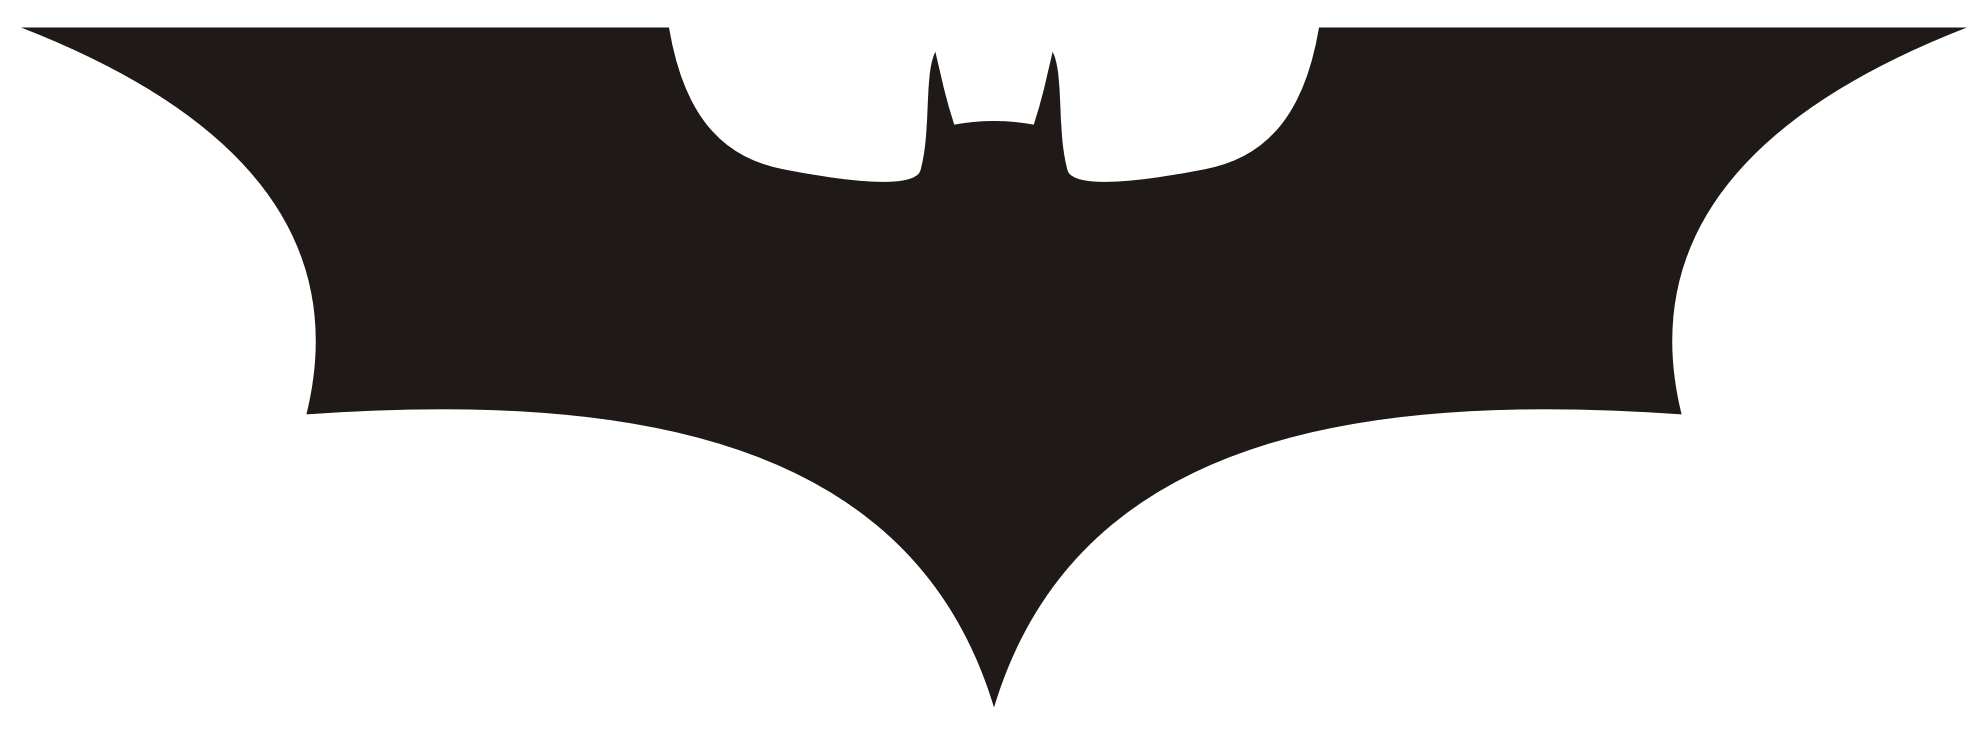 12 Batman Silhouette Logo Fre